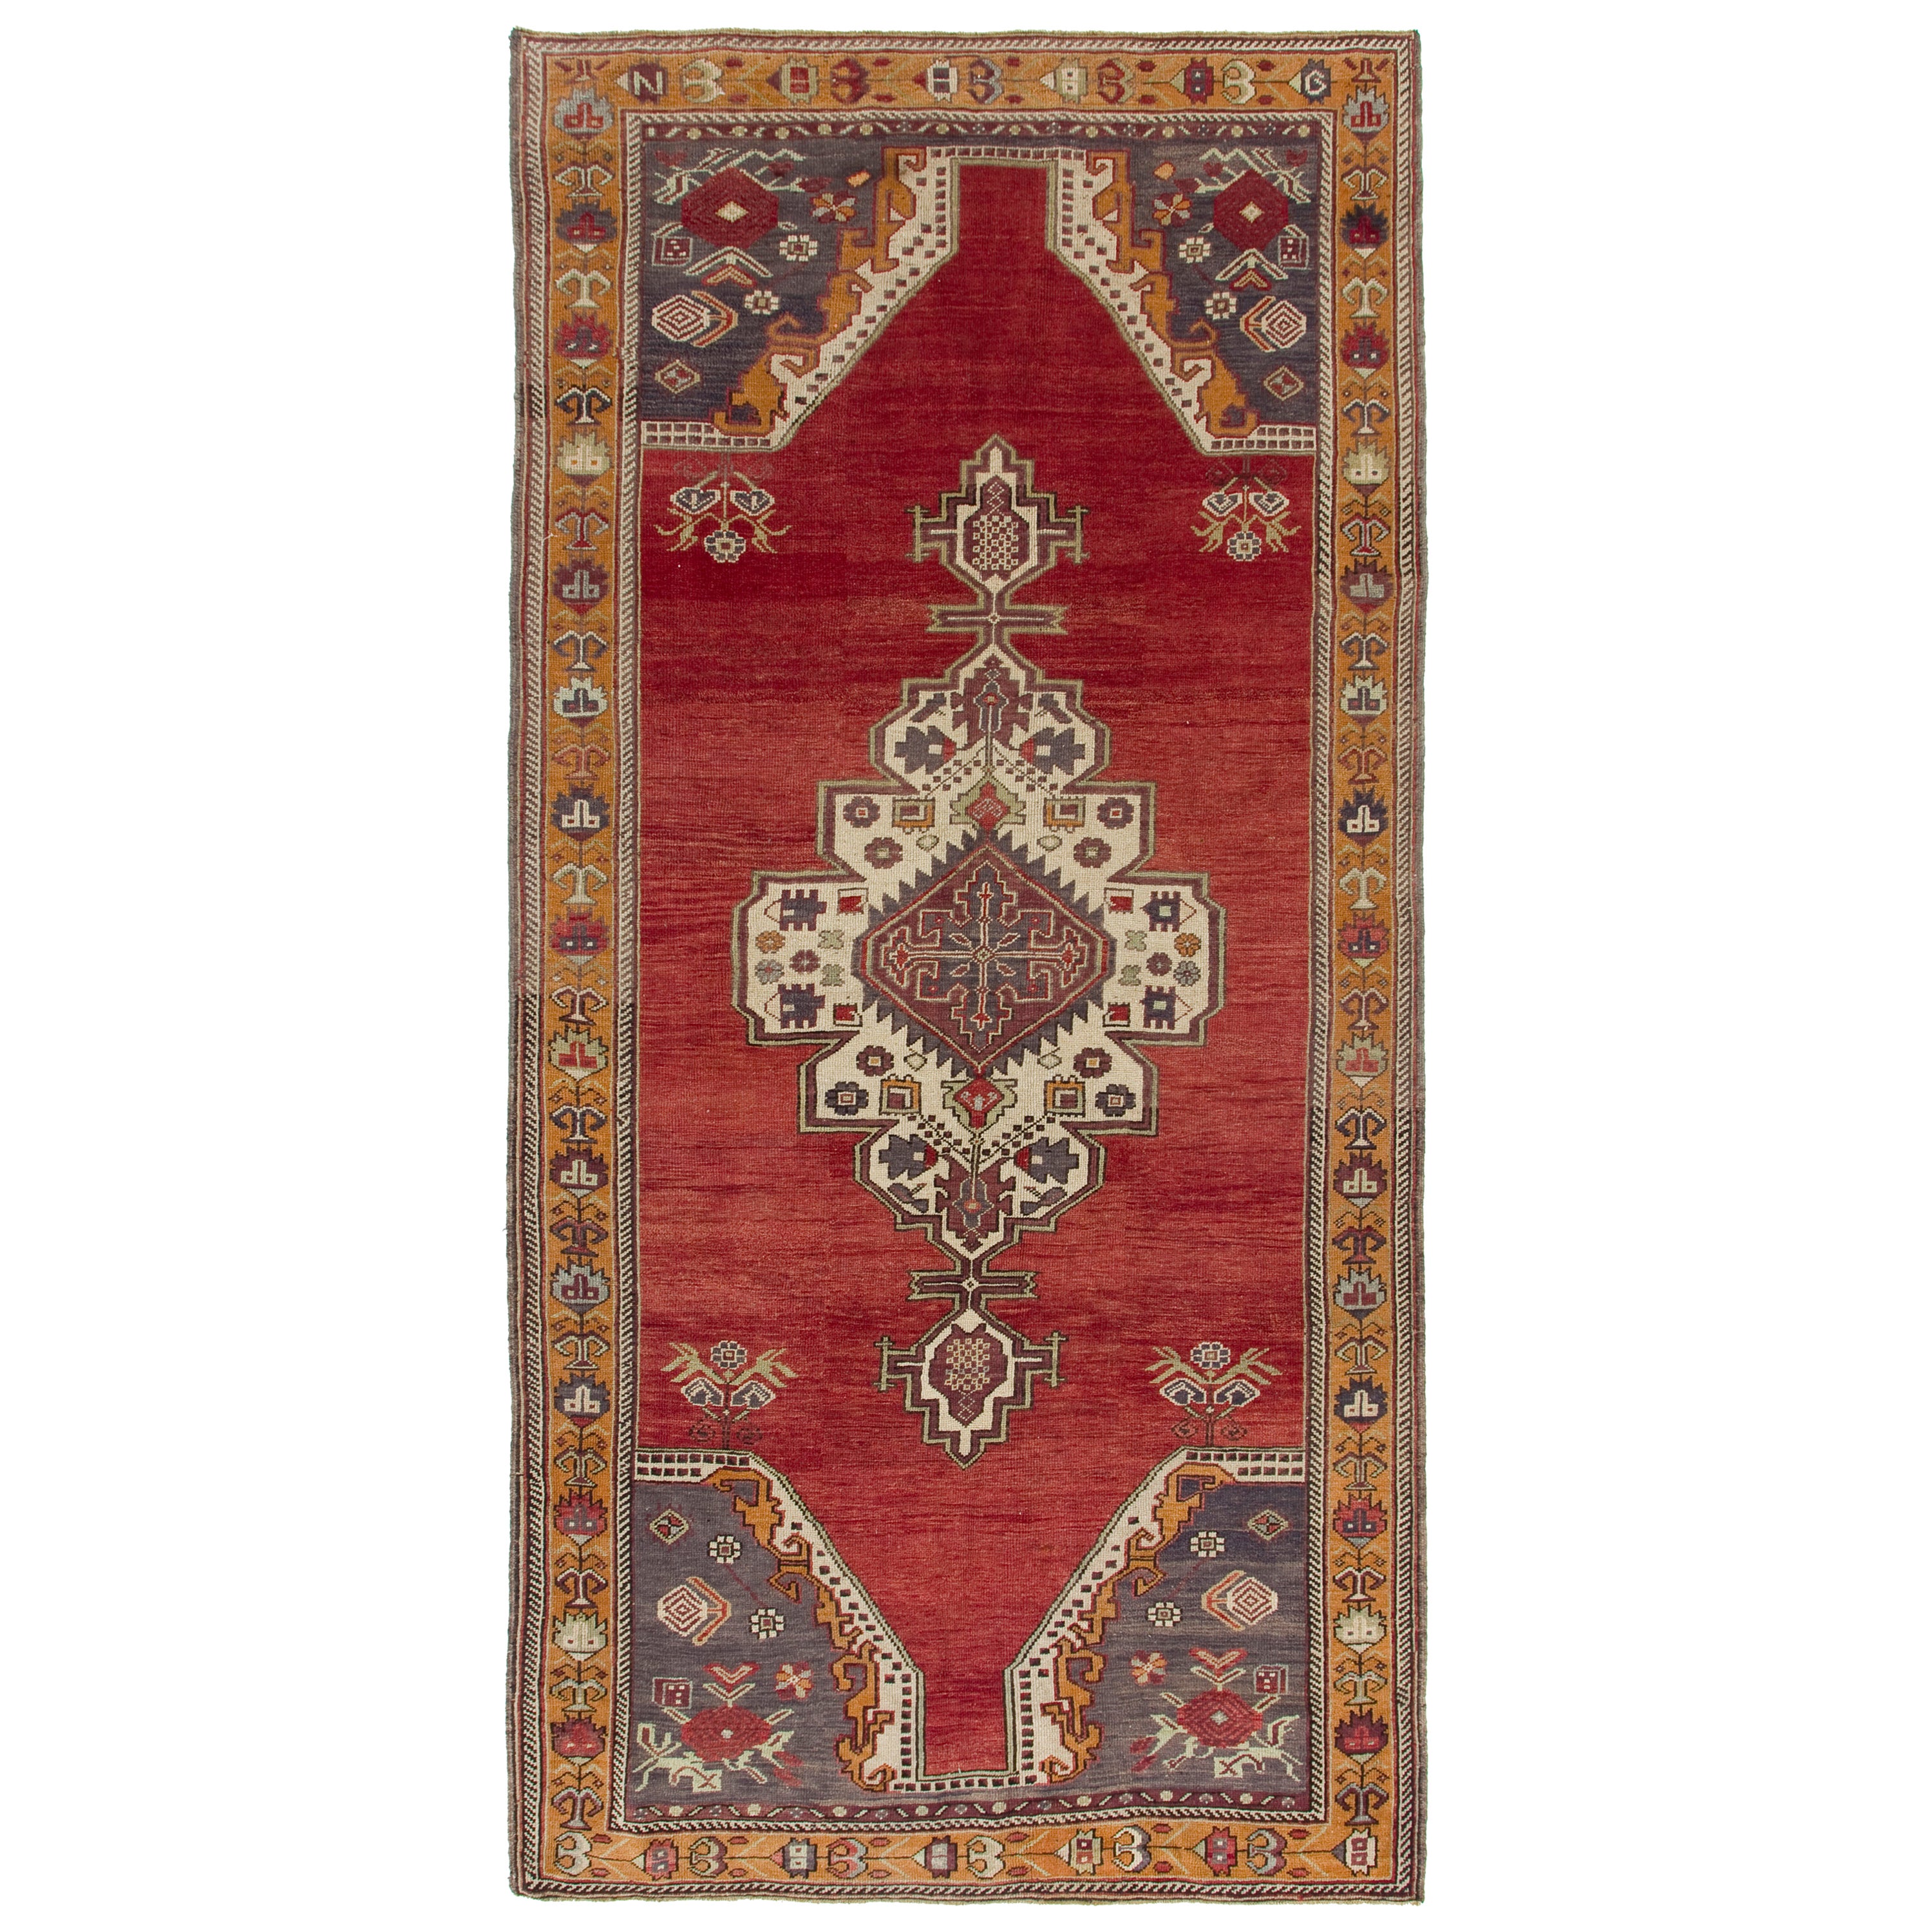 Handgefertigter türkischer Vintage-Teppich in Rot, Indigo und Marigold, 6x12 m, Unikat im Angebot